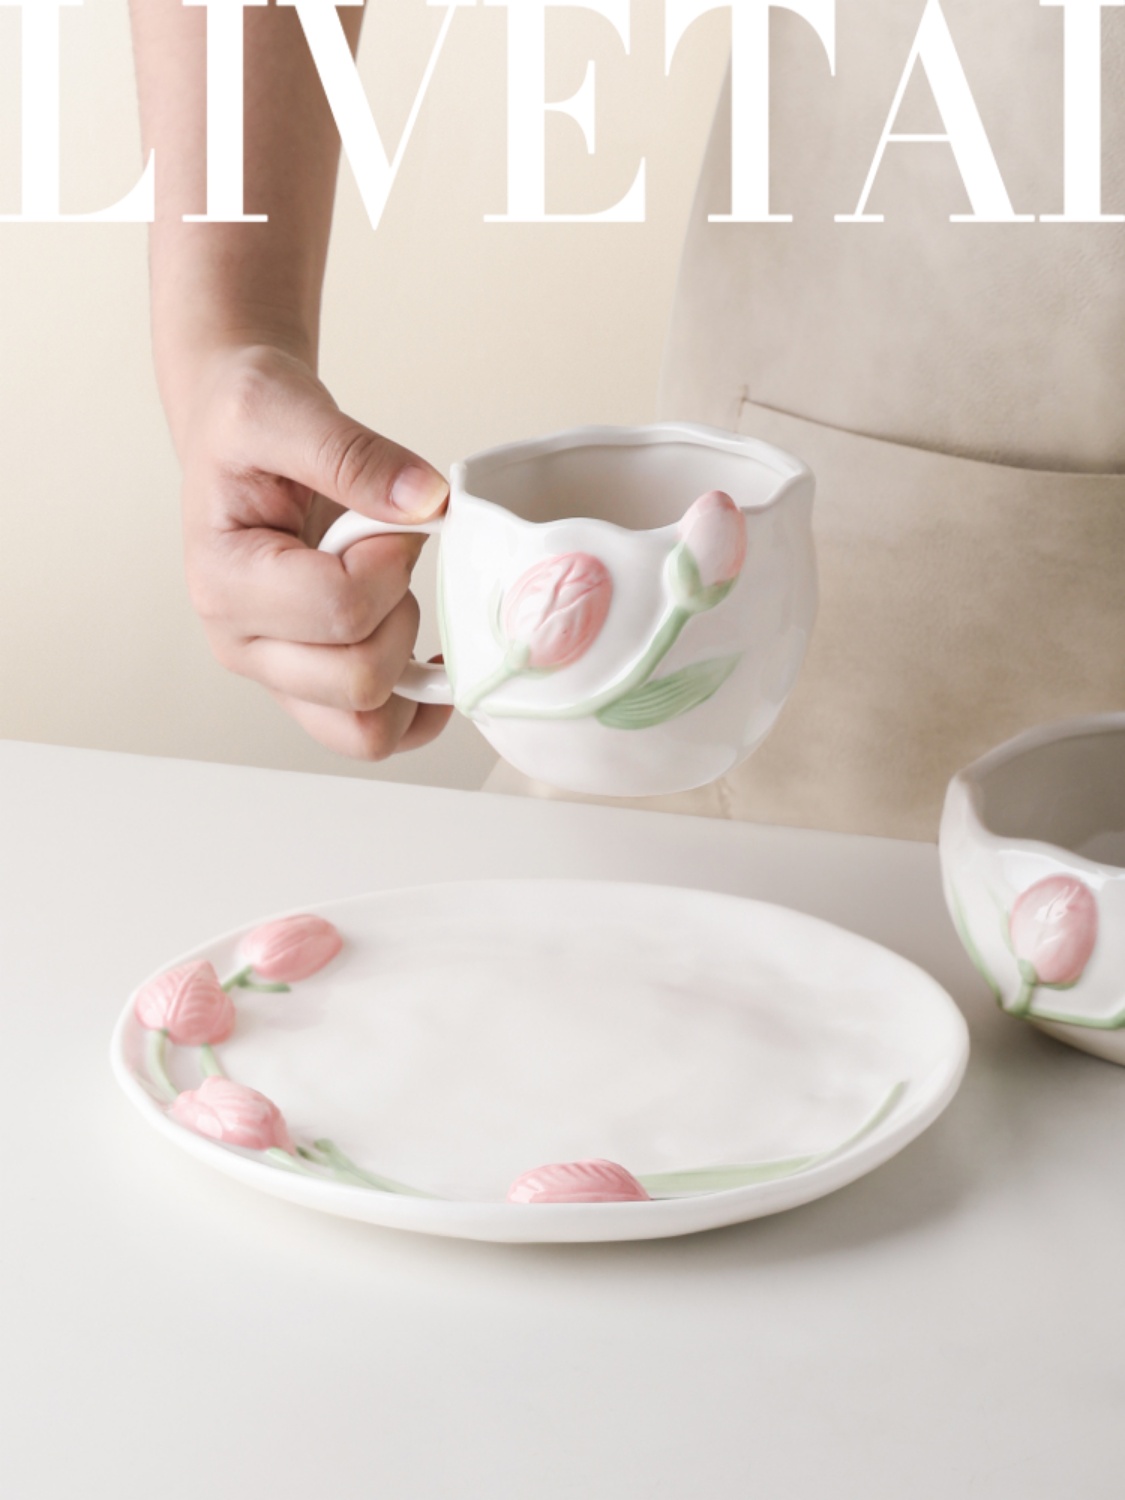 ins風鬱金香復古法式陶瓷餐盤早餐碗奶油色立體浮雕馬克杯歐式風格單個出售9英寸